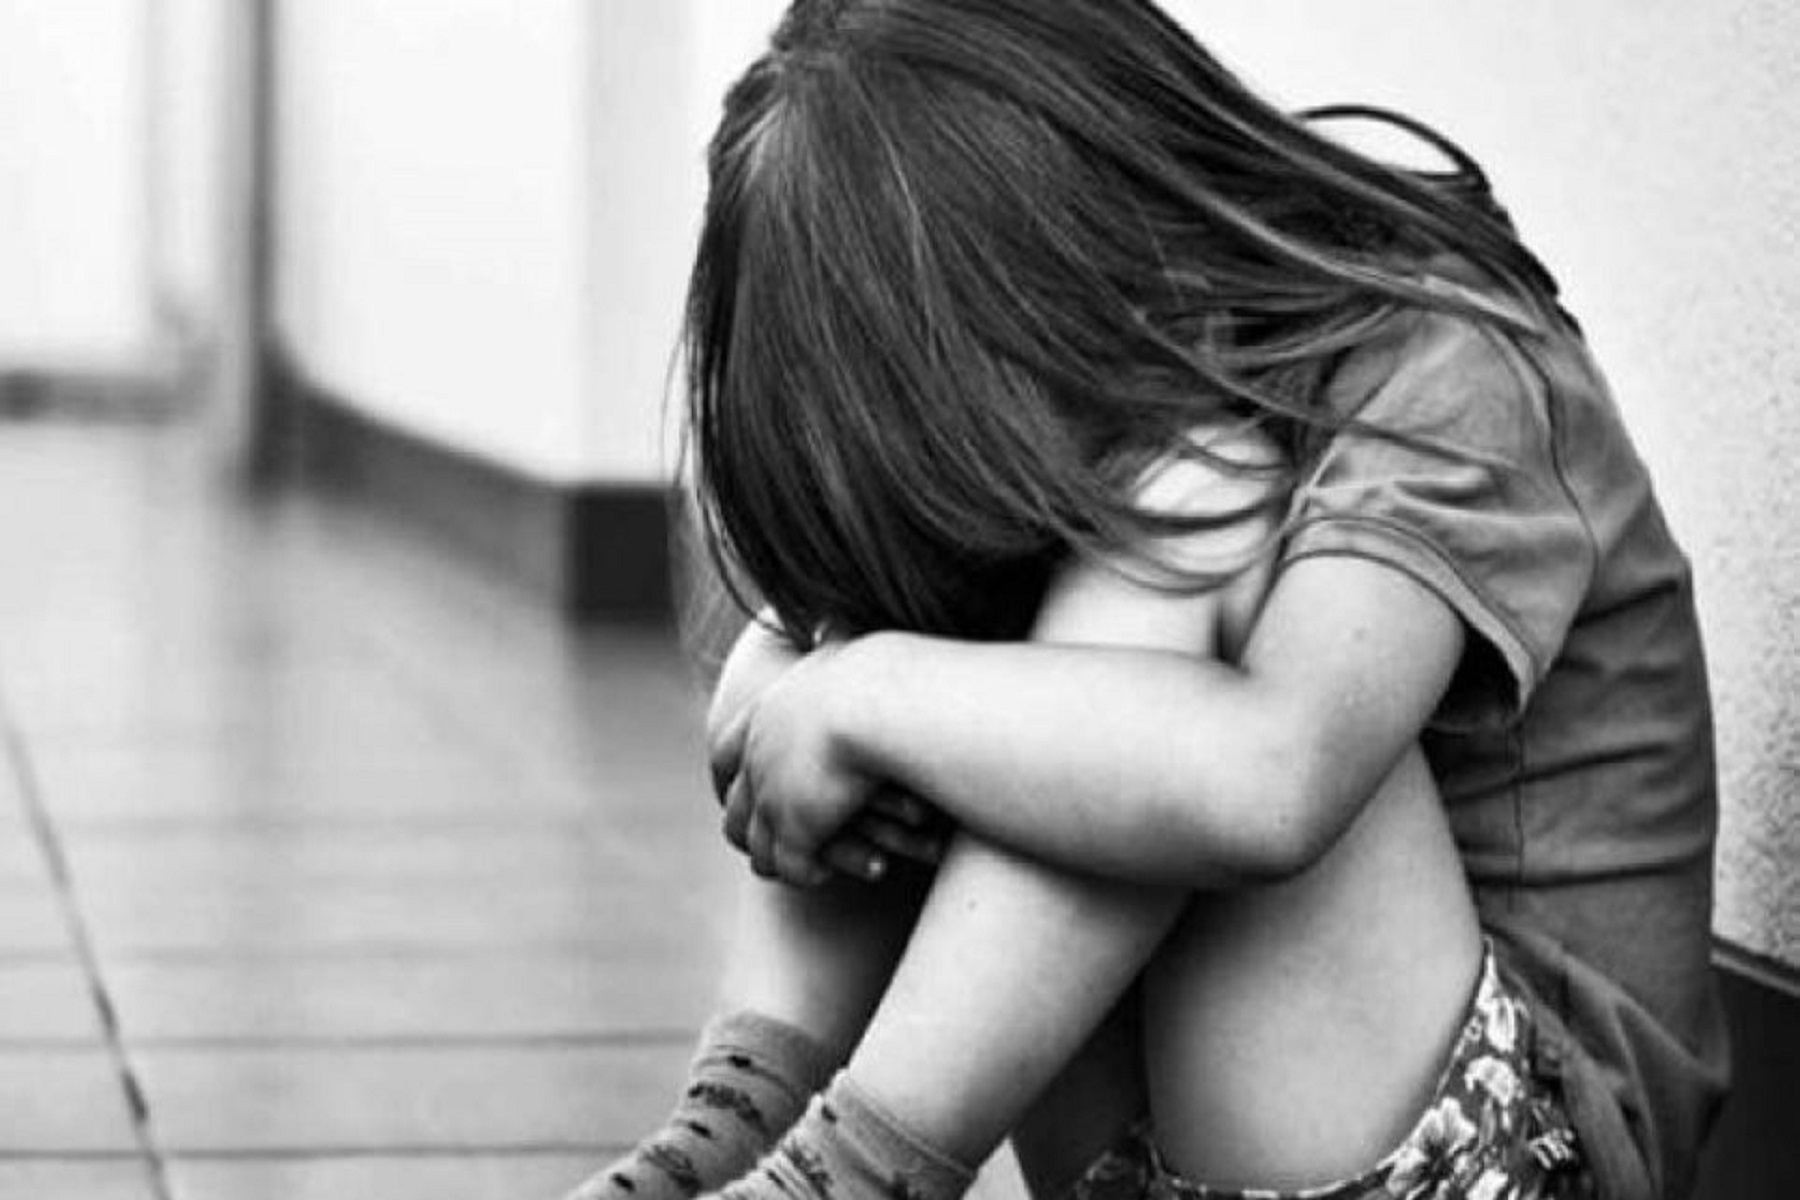 Παιδοψυχιατρική Εταιρεία Ελλάδος: “Αγκαλιάζει” παιδιά και εφήβους θύματα σεξουαλικής βίας